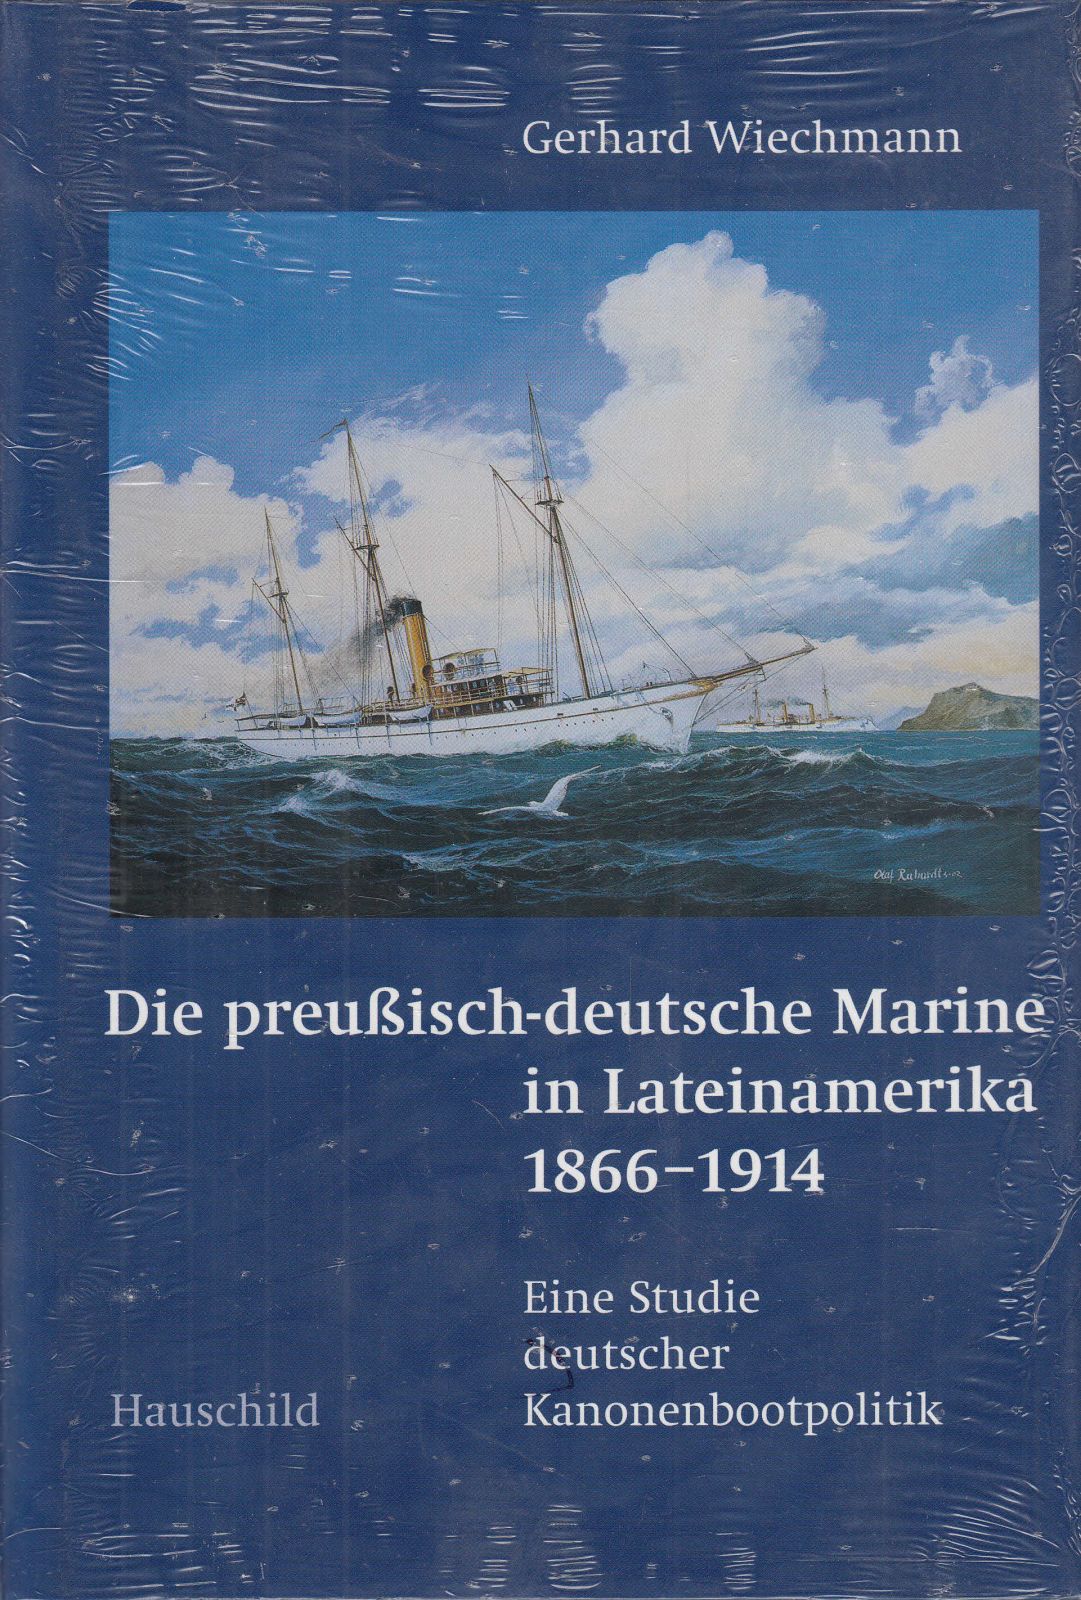 Die preußisch-deutsche Marine in Lateinamerika 1866 - 1914. Eine Studie deutscher Kanonenbootpolitik.